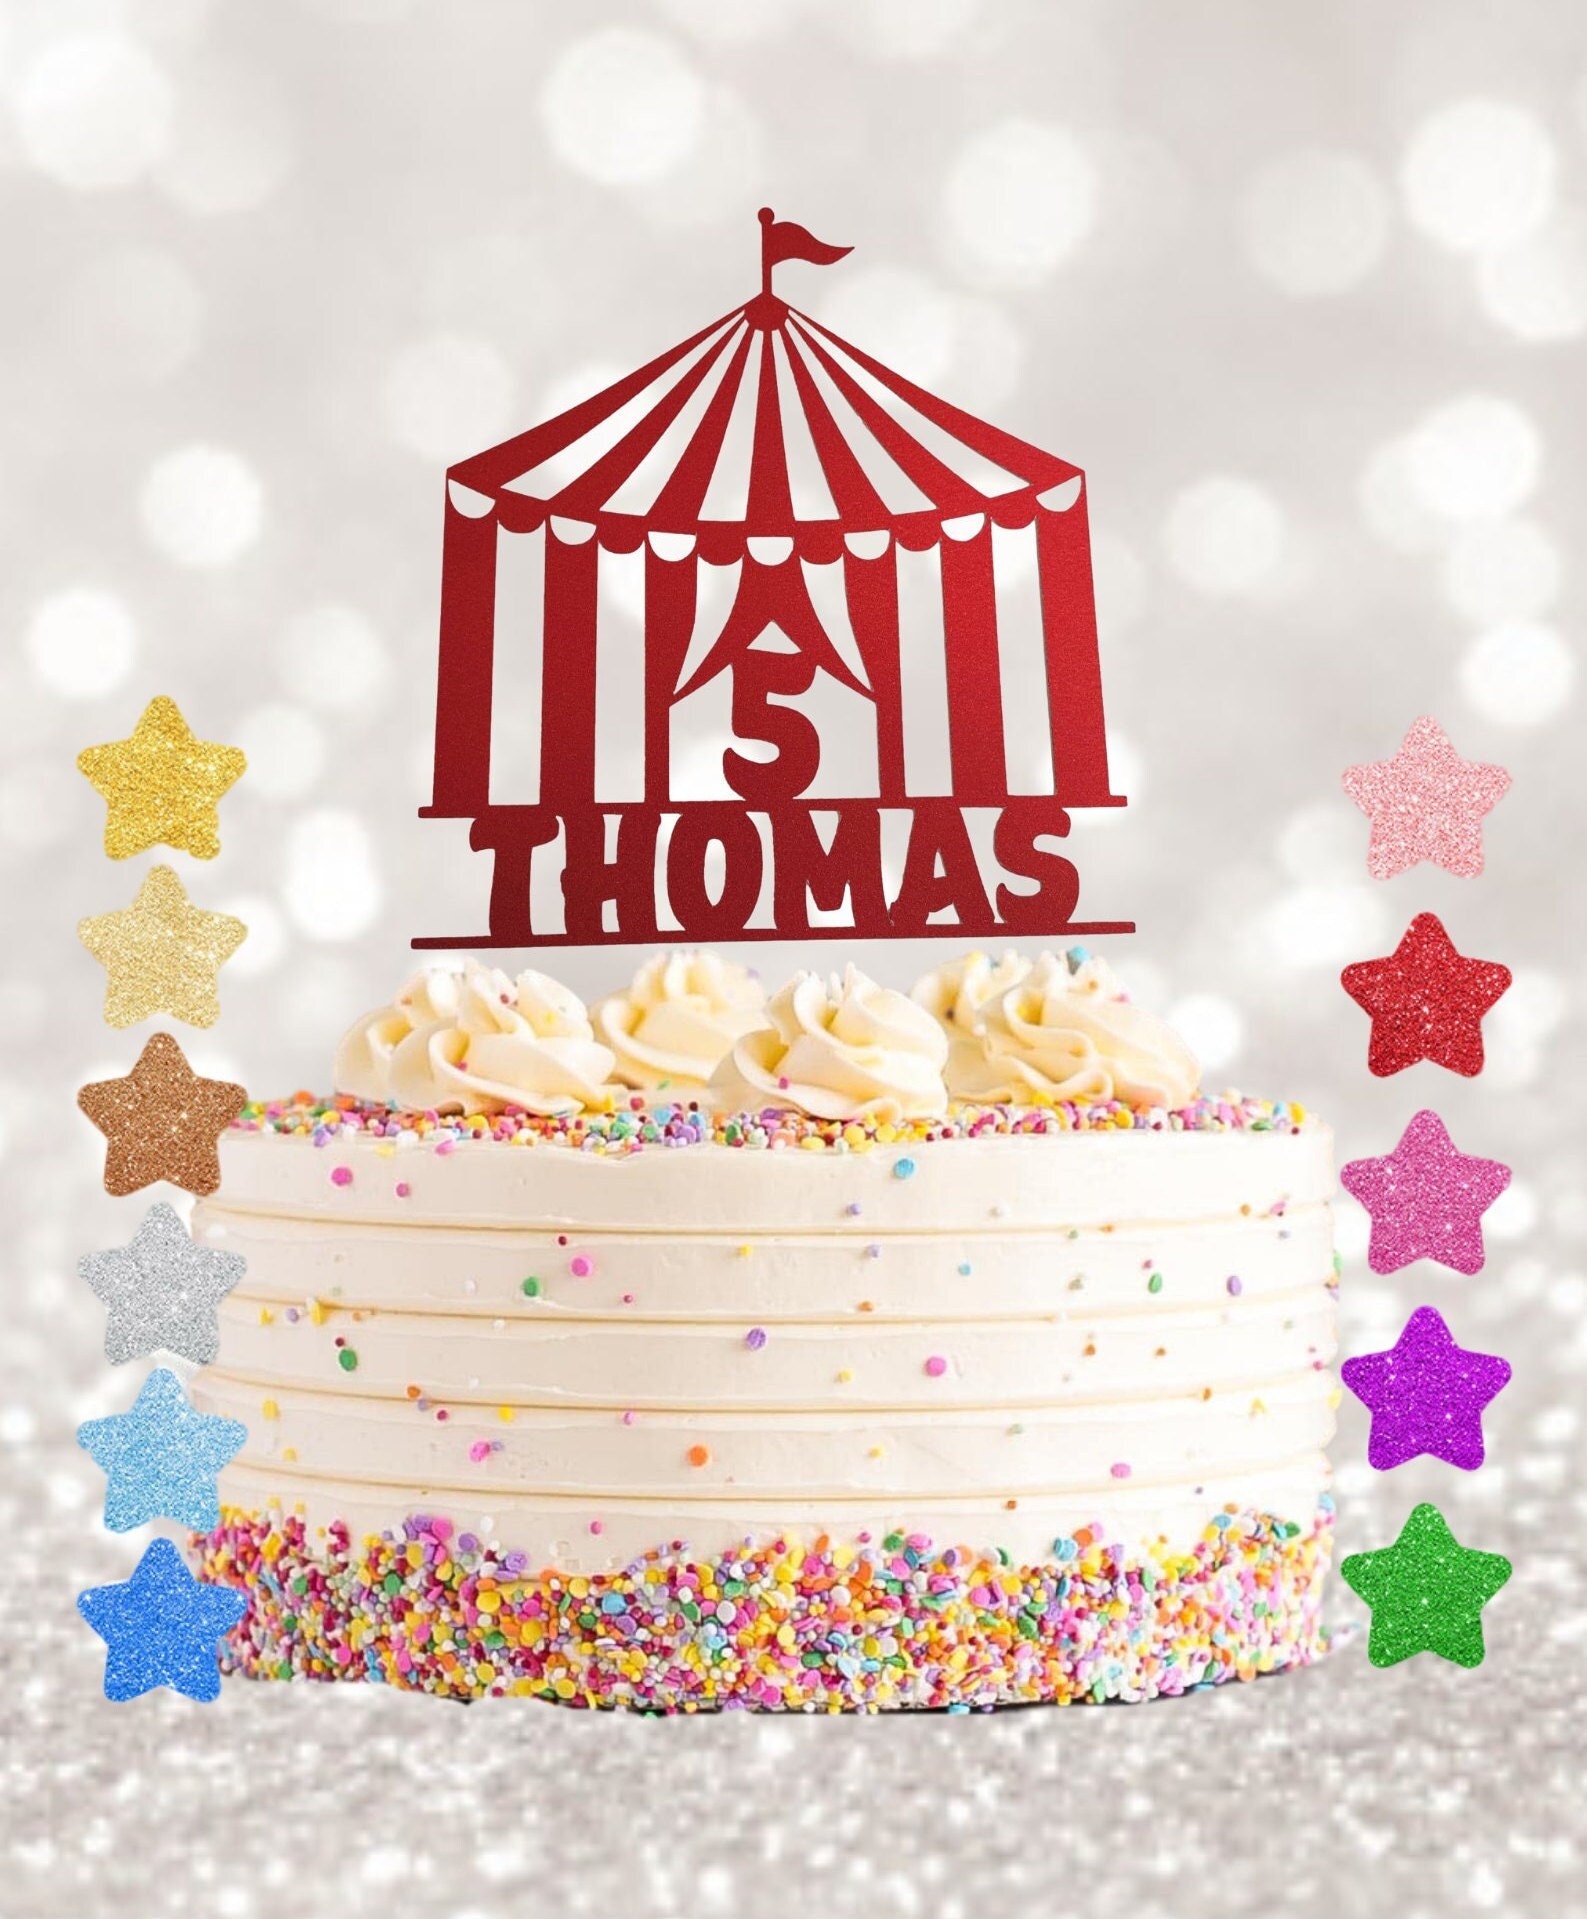 Décoration pour gâteau (topper cake) sur le thème cirque personnalisée avec  un prénom et couleur - Un grand marché